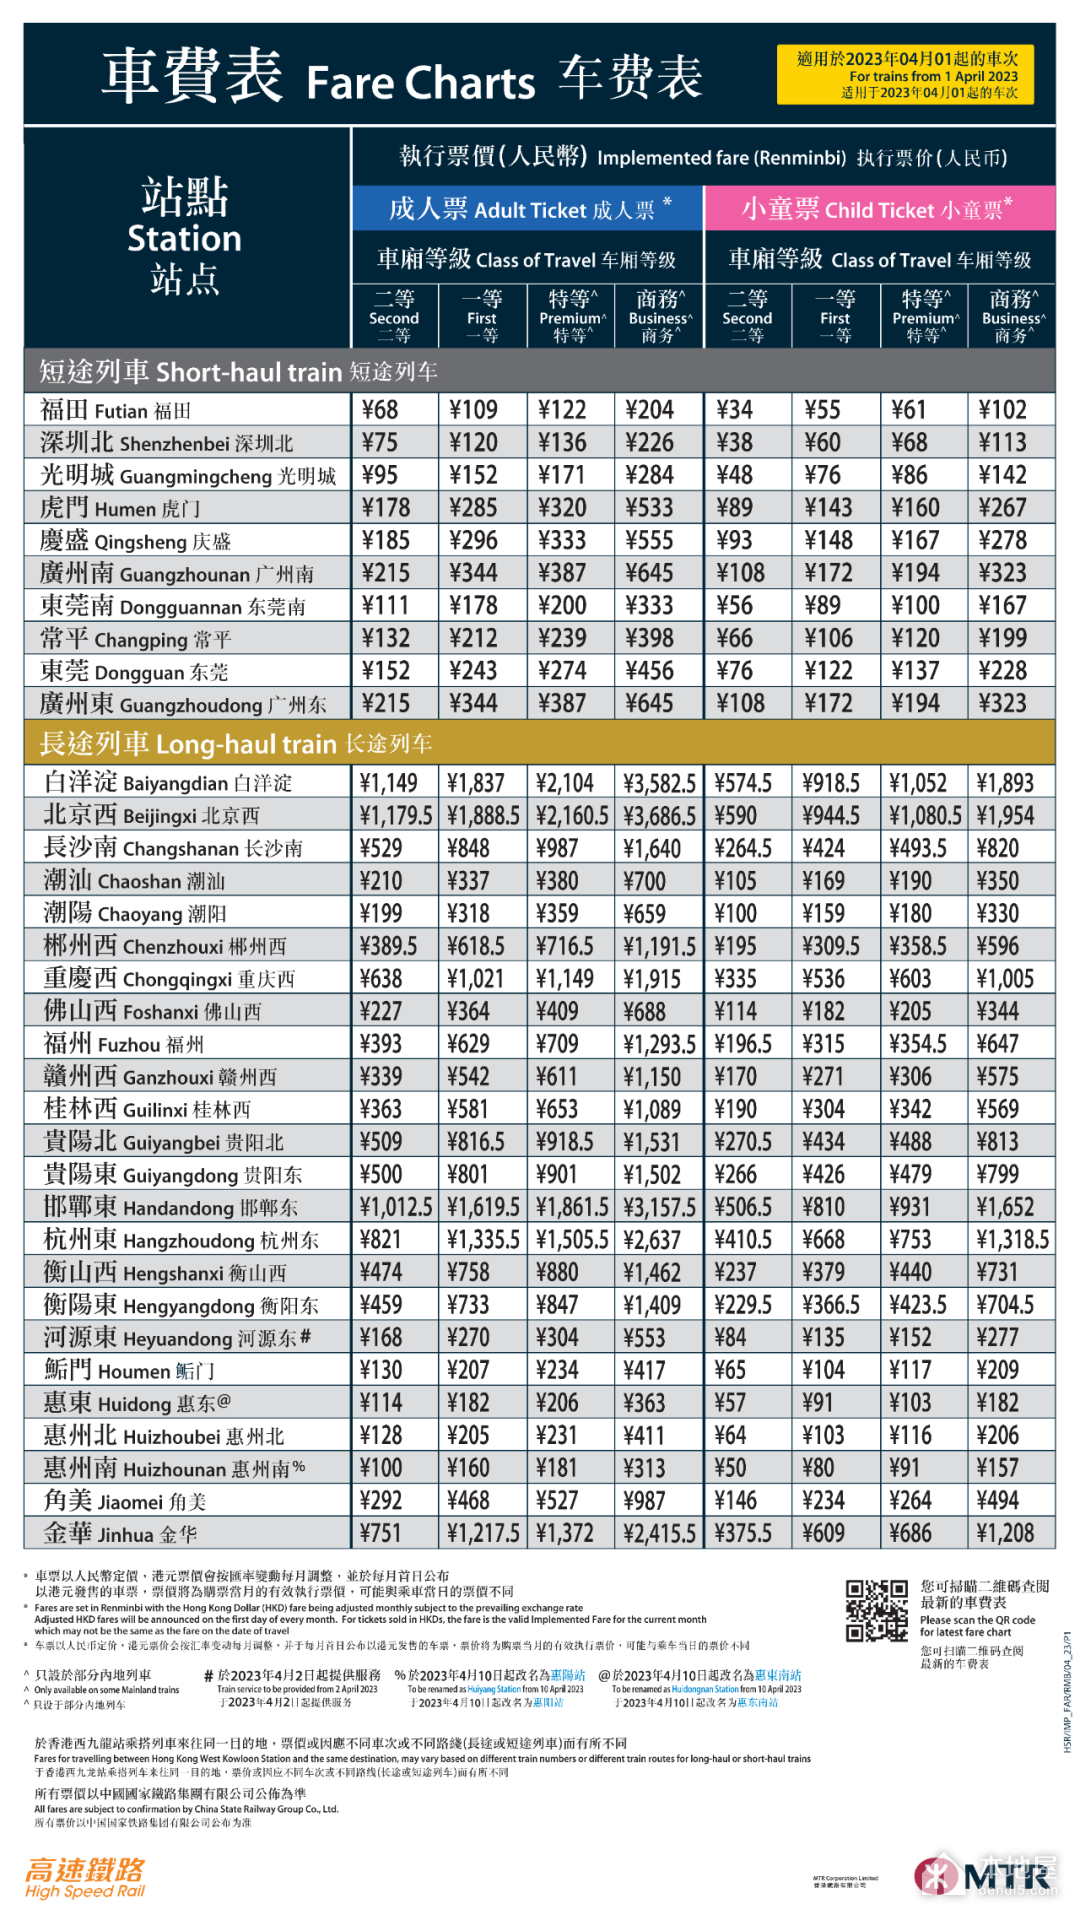 香港高鐵價格是多少